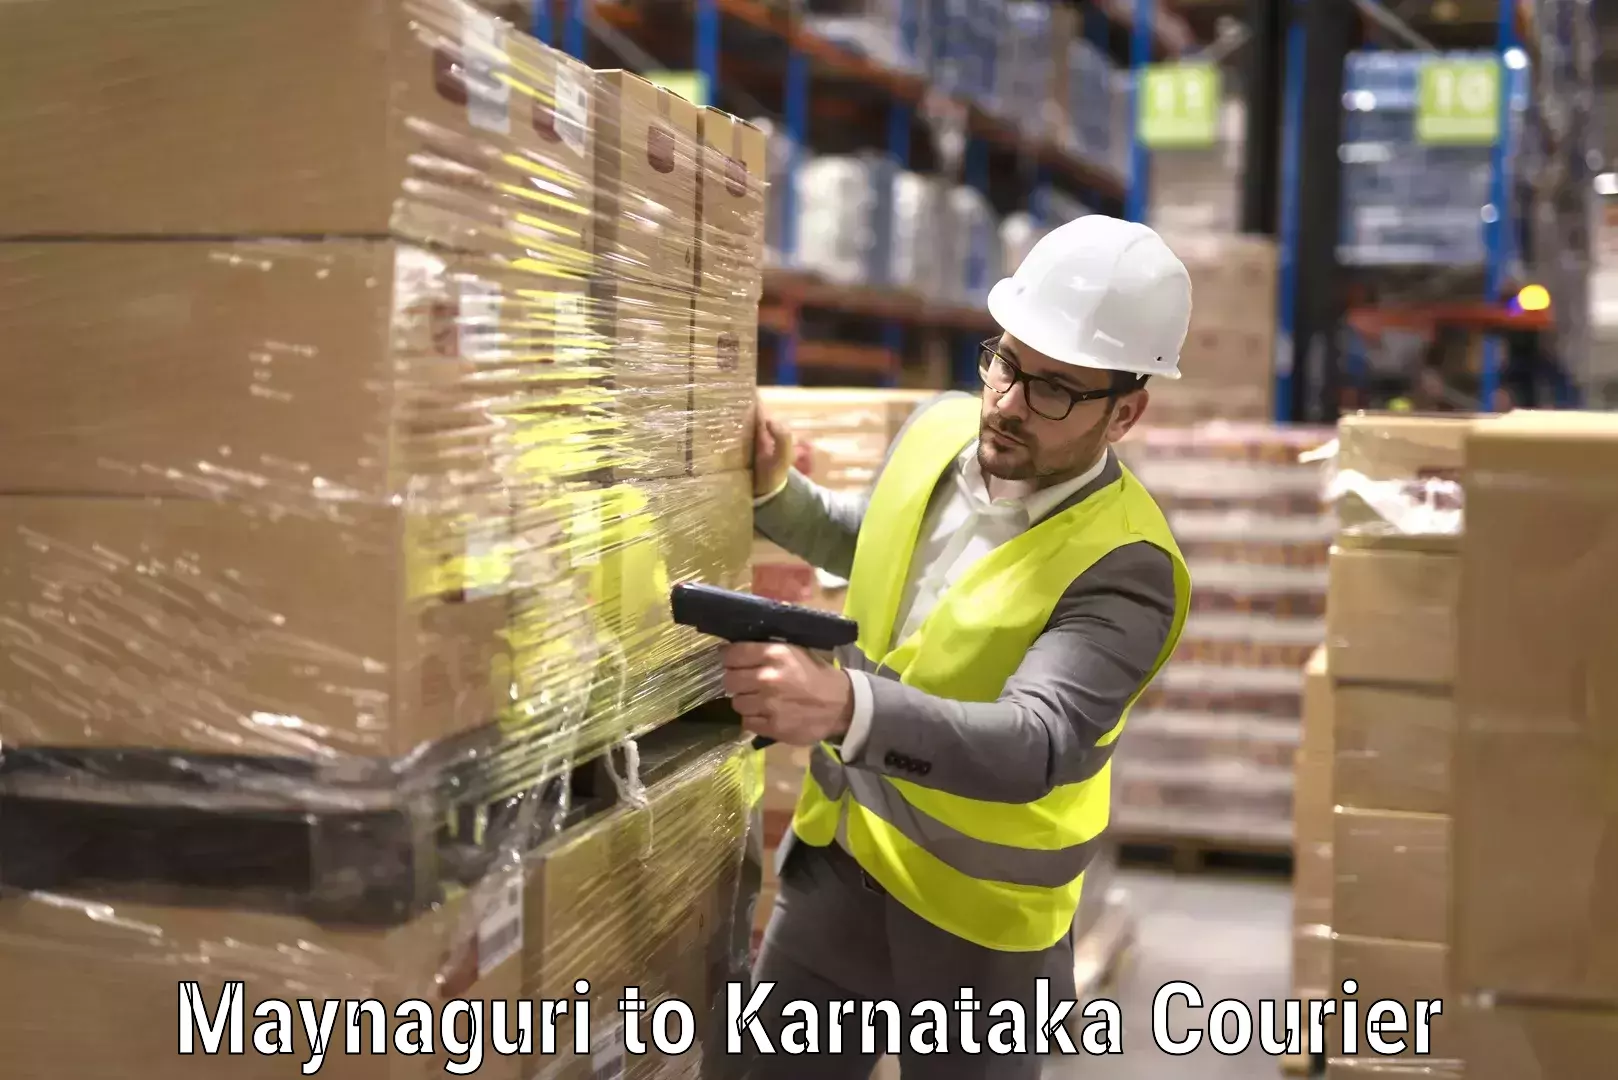 Reliable movers Maynaguri to Karnataka